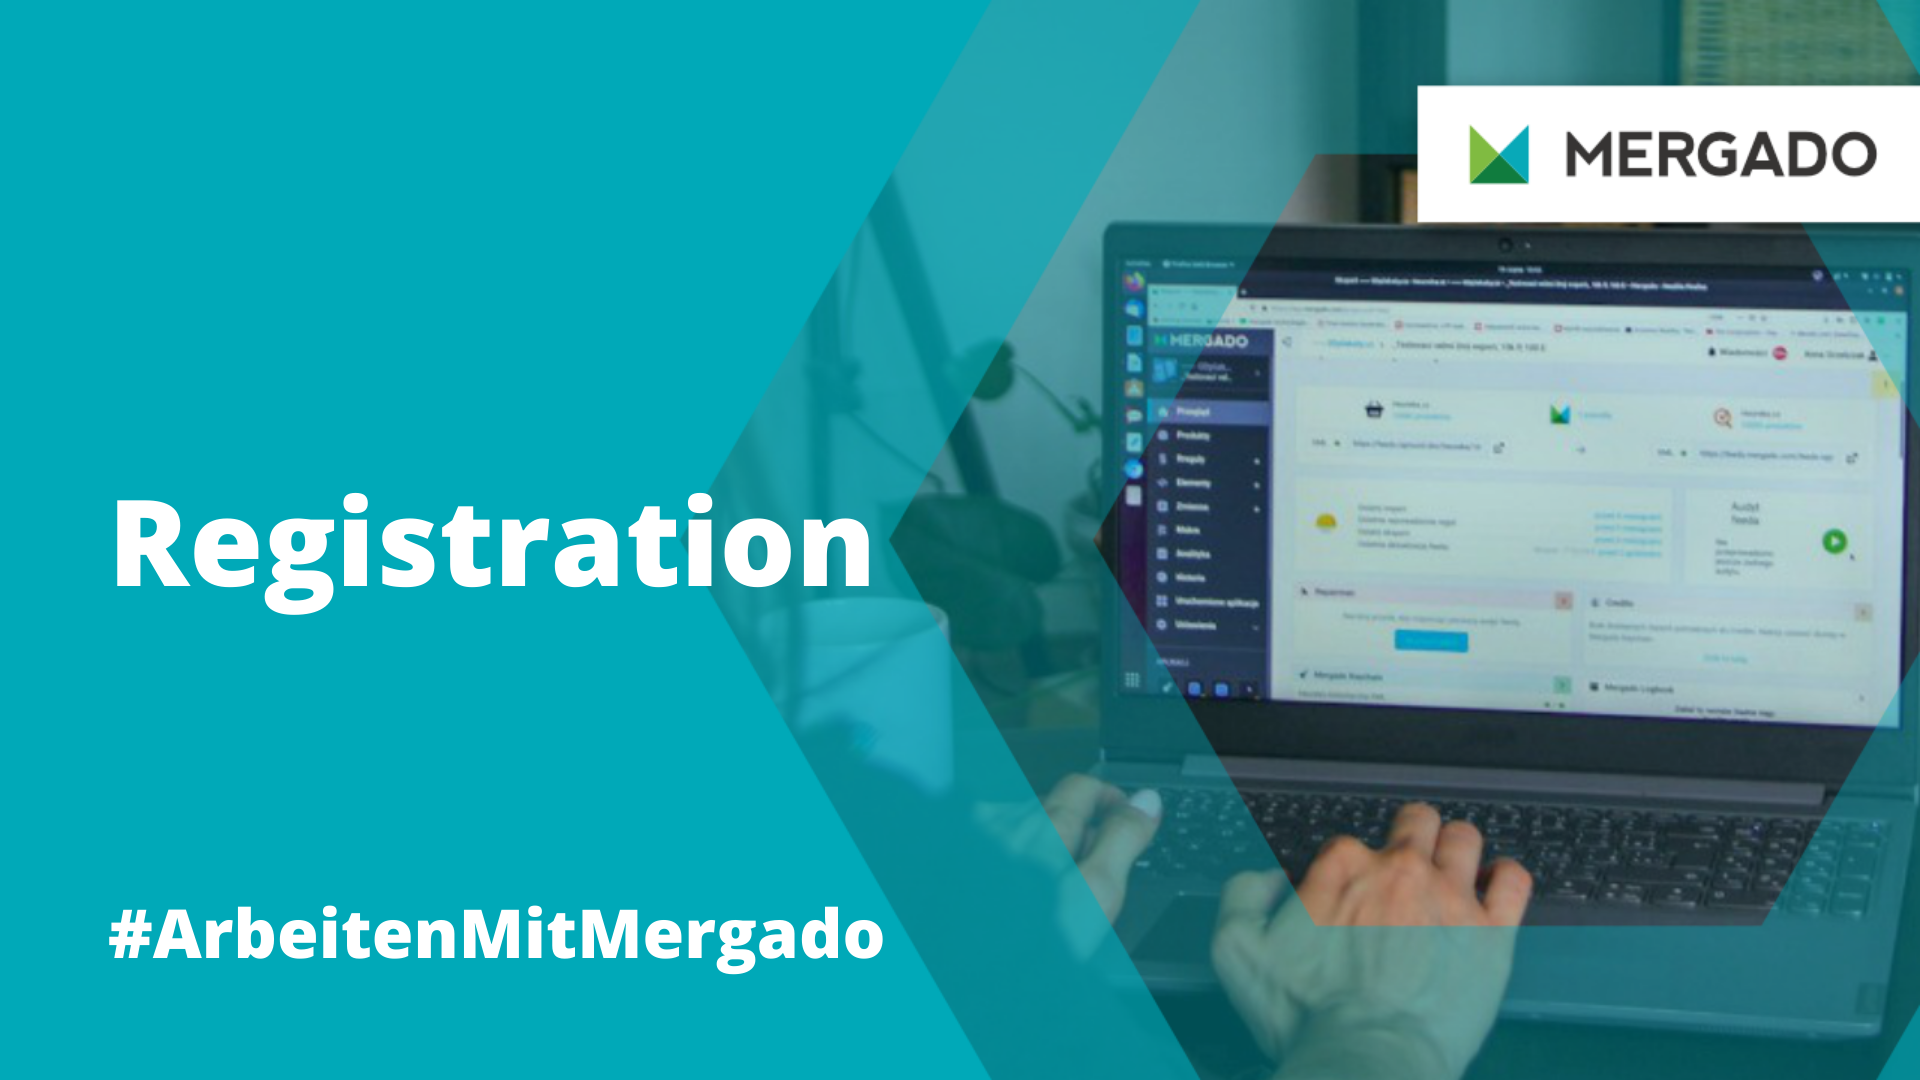 Warum man so viele persönliche Informationen benötigt, um sich bei Mergado zu registrieren, und warum das kein Grund zur Sorge ist